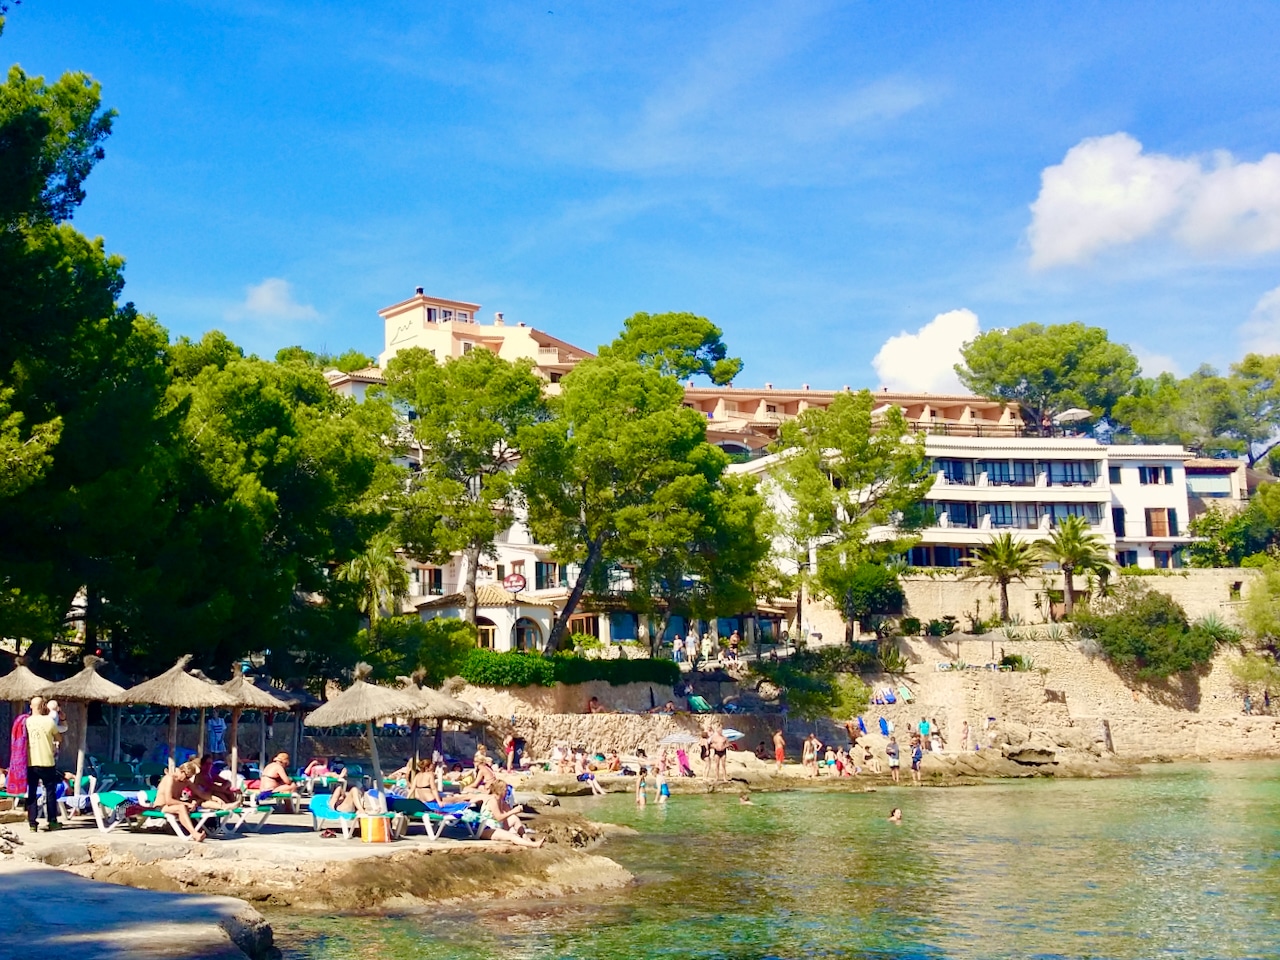 Mein Aufenthalt im Hotel Cala Fornells Mallorca war und ist immer wieder eine tolle Erfahrung. Hotel Cala Fornells Mallorca – Erfahrungen & Bewertungen